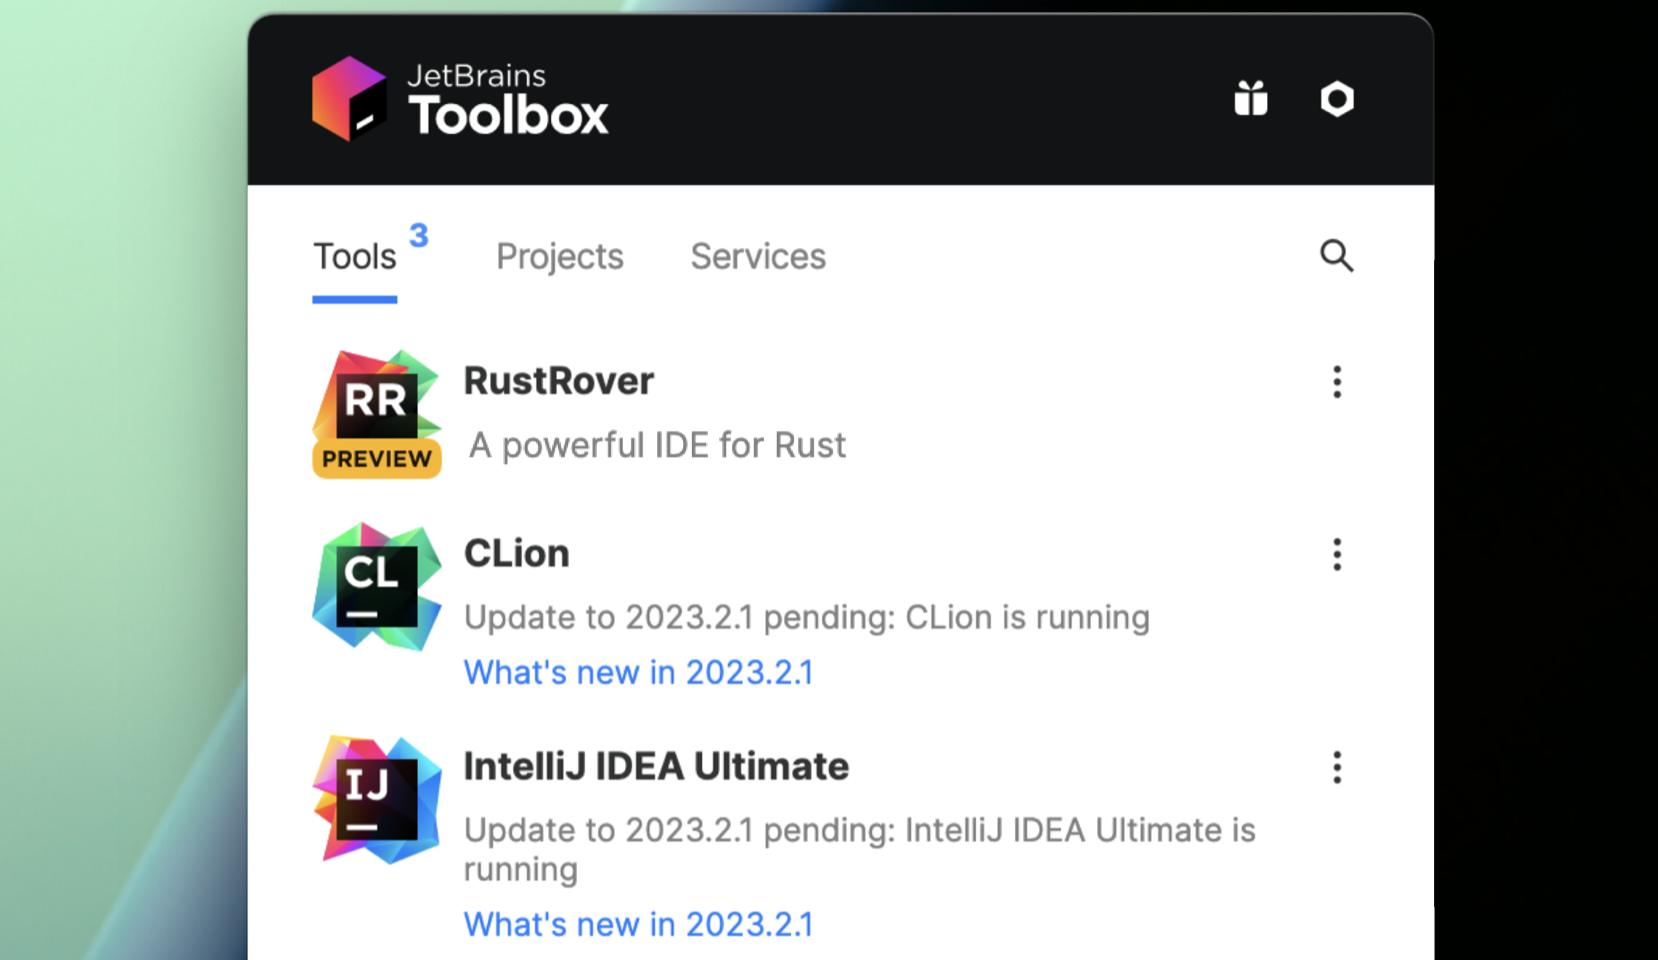 Install Toolbox App